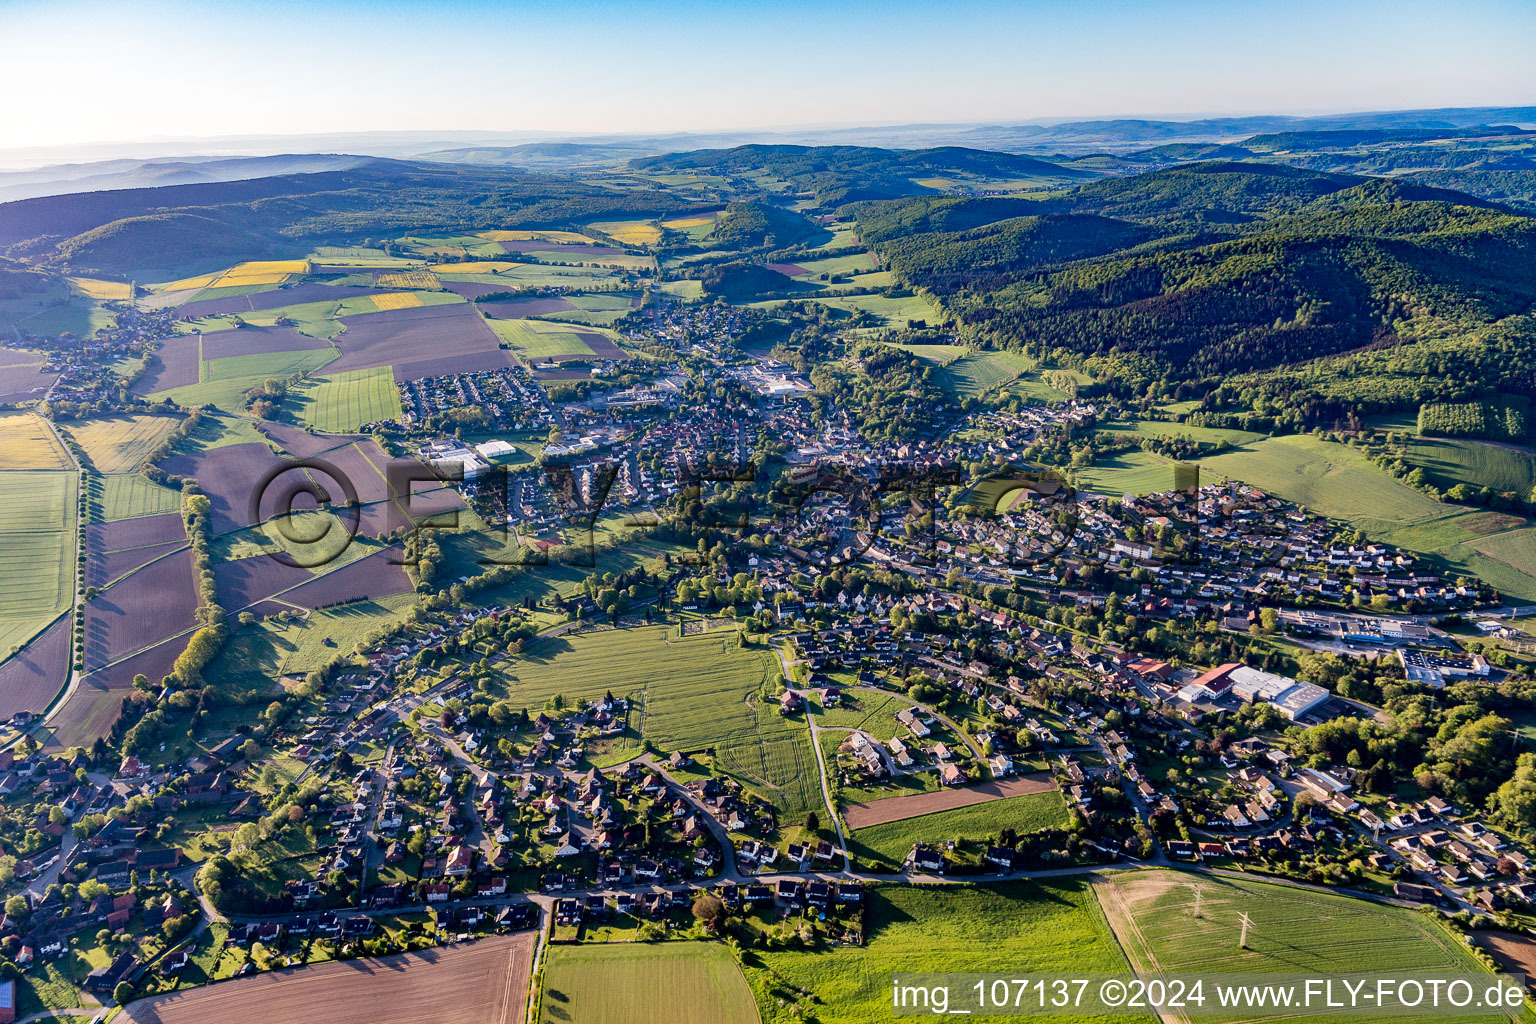 Vue aérienne de Vue sur la commune en bordure de champs agricoles et de zones agricoles à Eschershausen dans le département Basse-Saxe, Allemagne